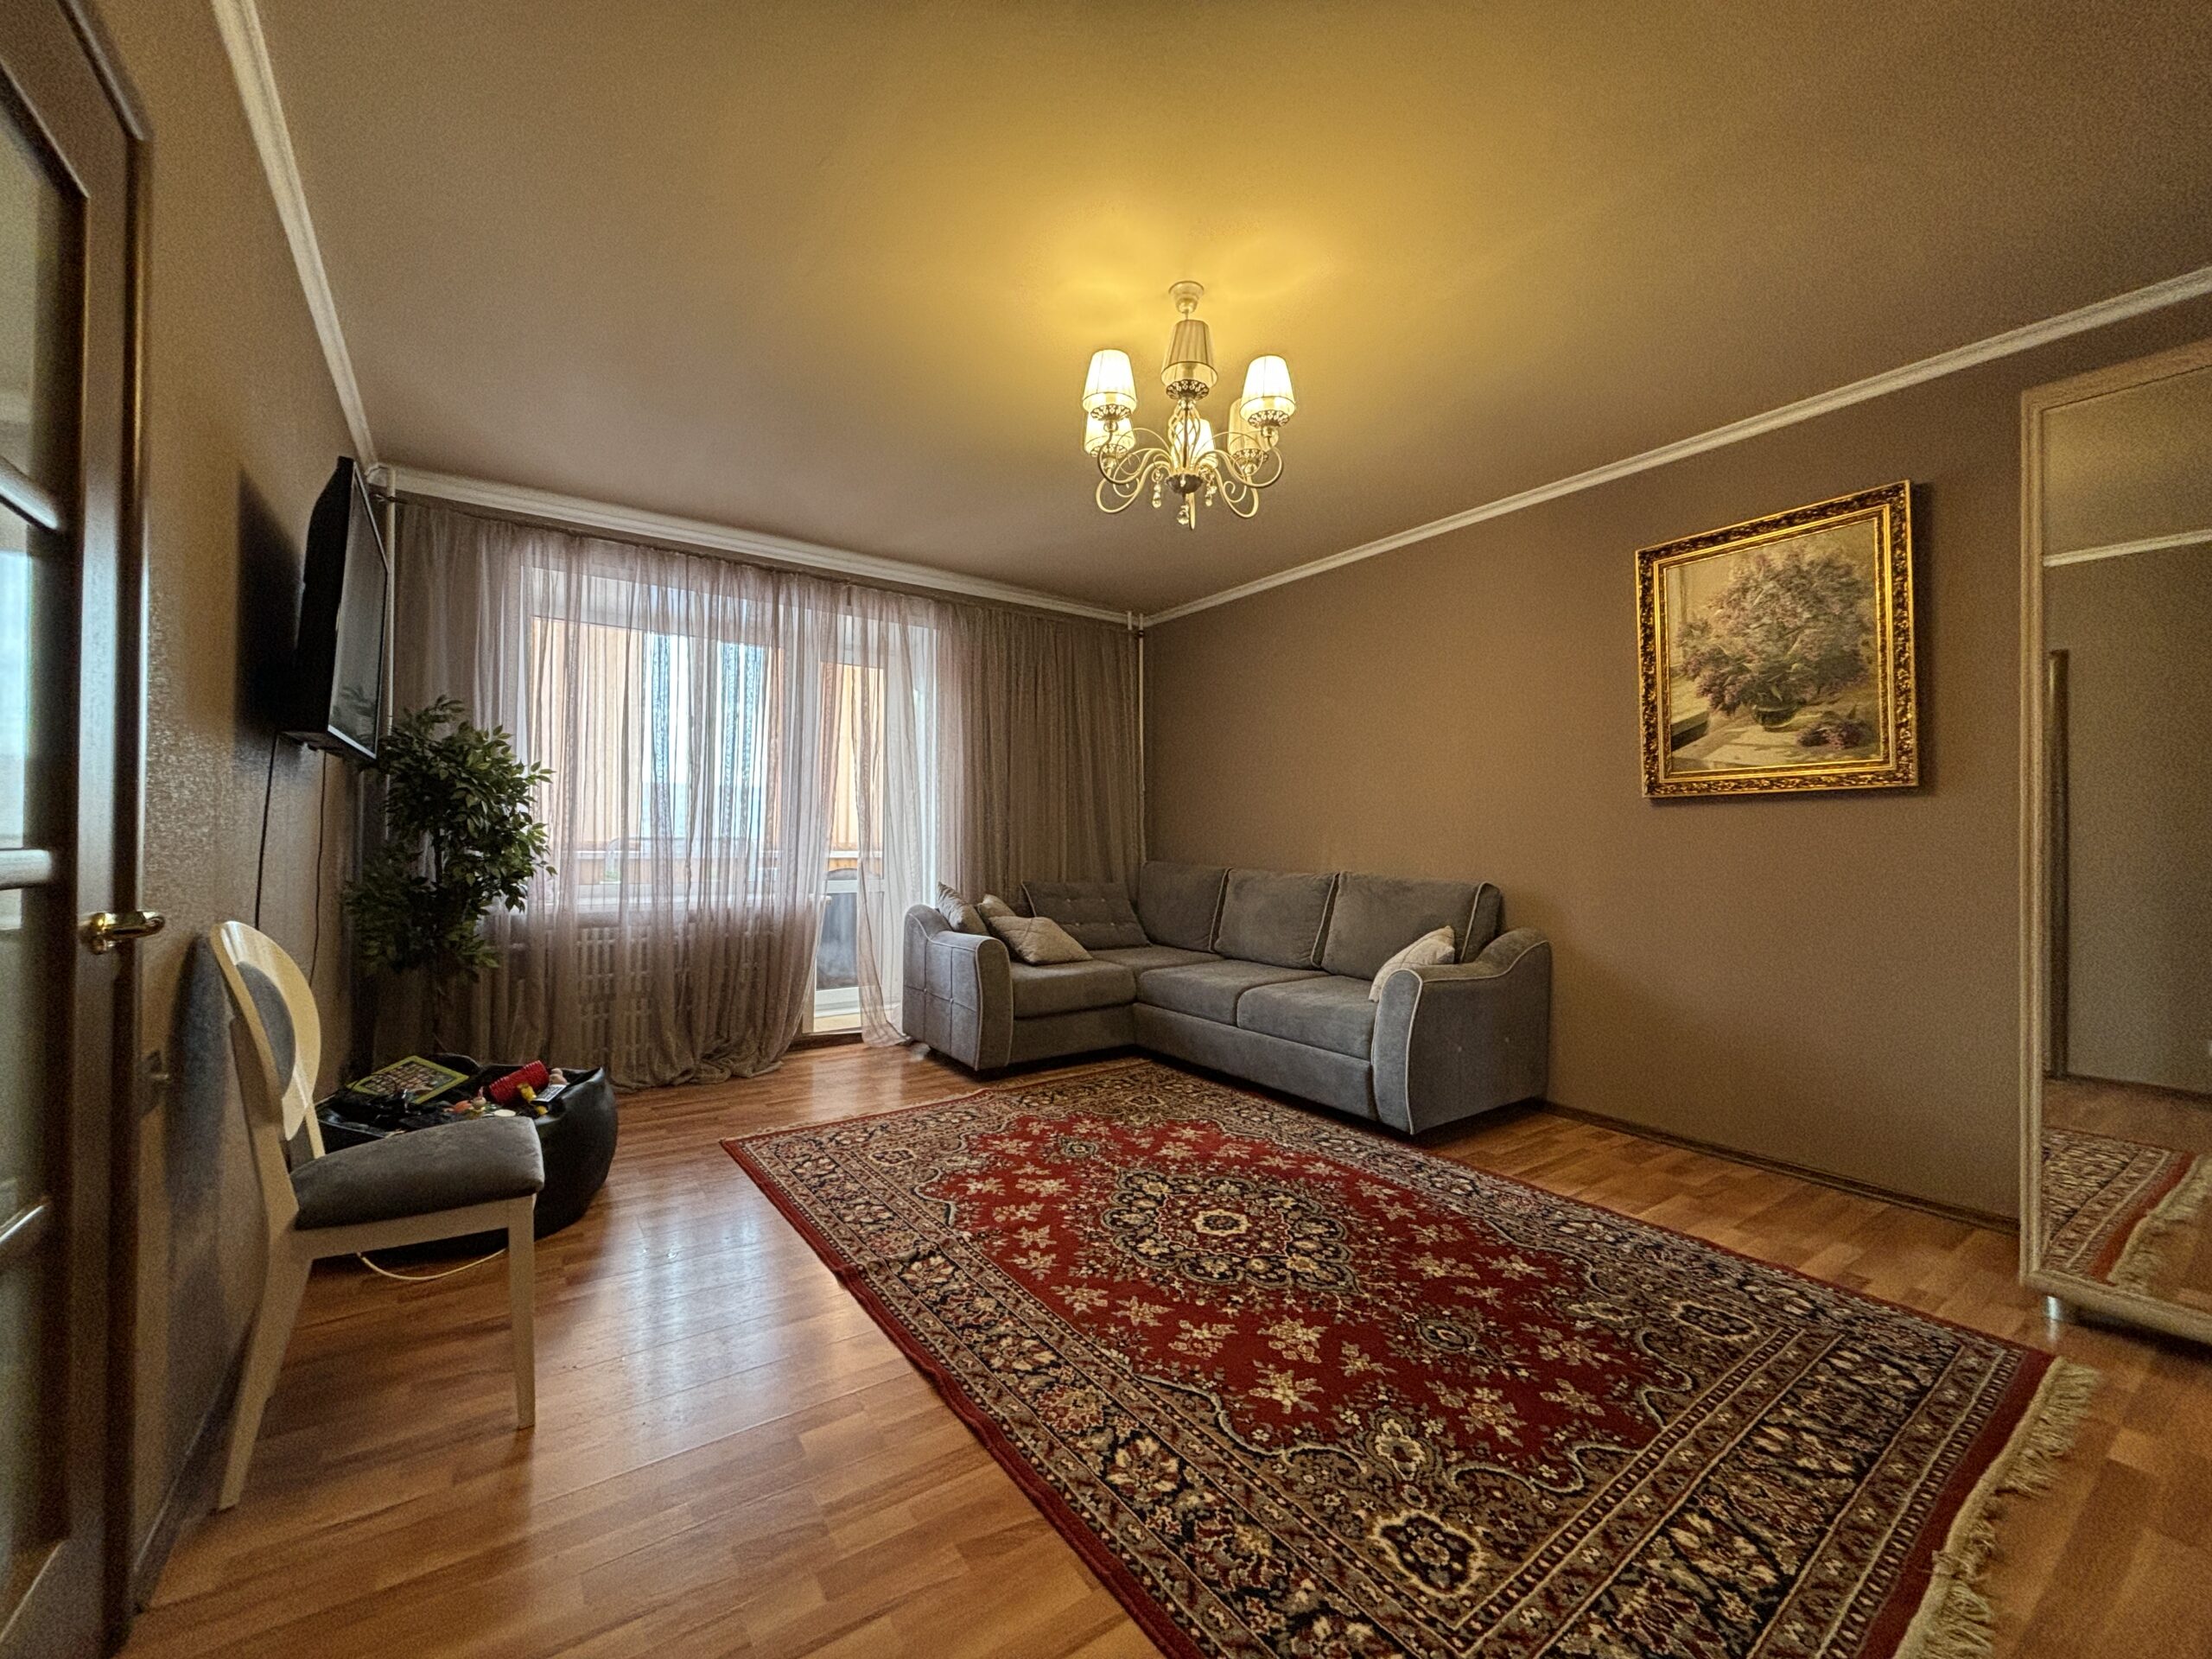 фото гостиная с новый евро ремонтом Товарково купить 1 комнатную квартиру Калужская обл 89208858888